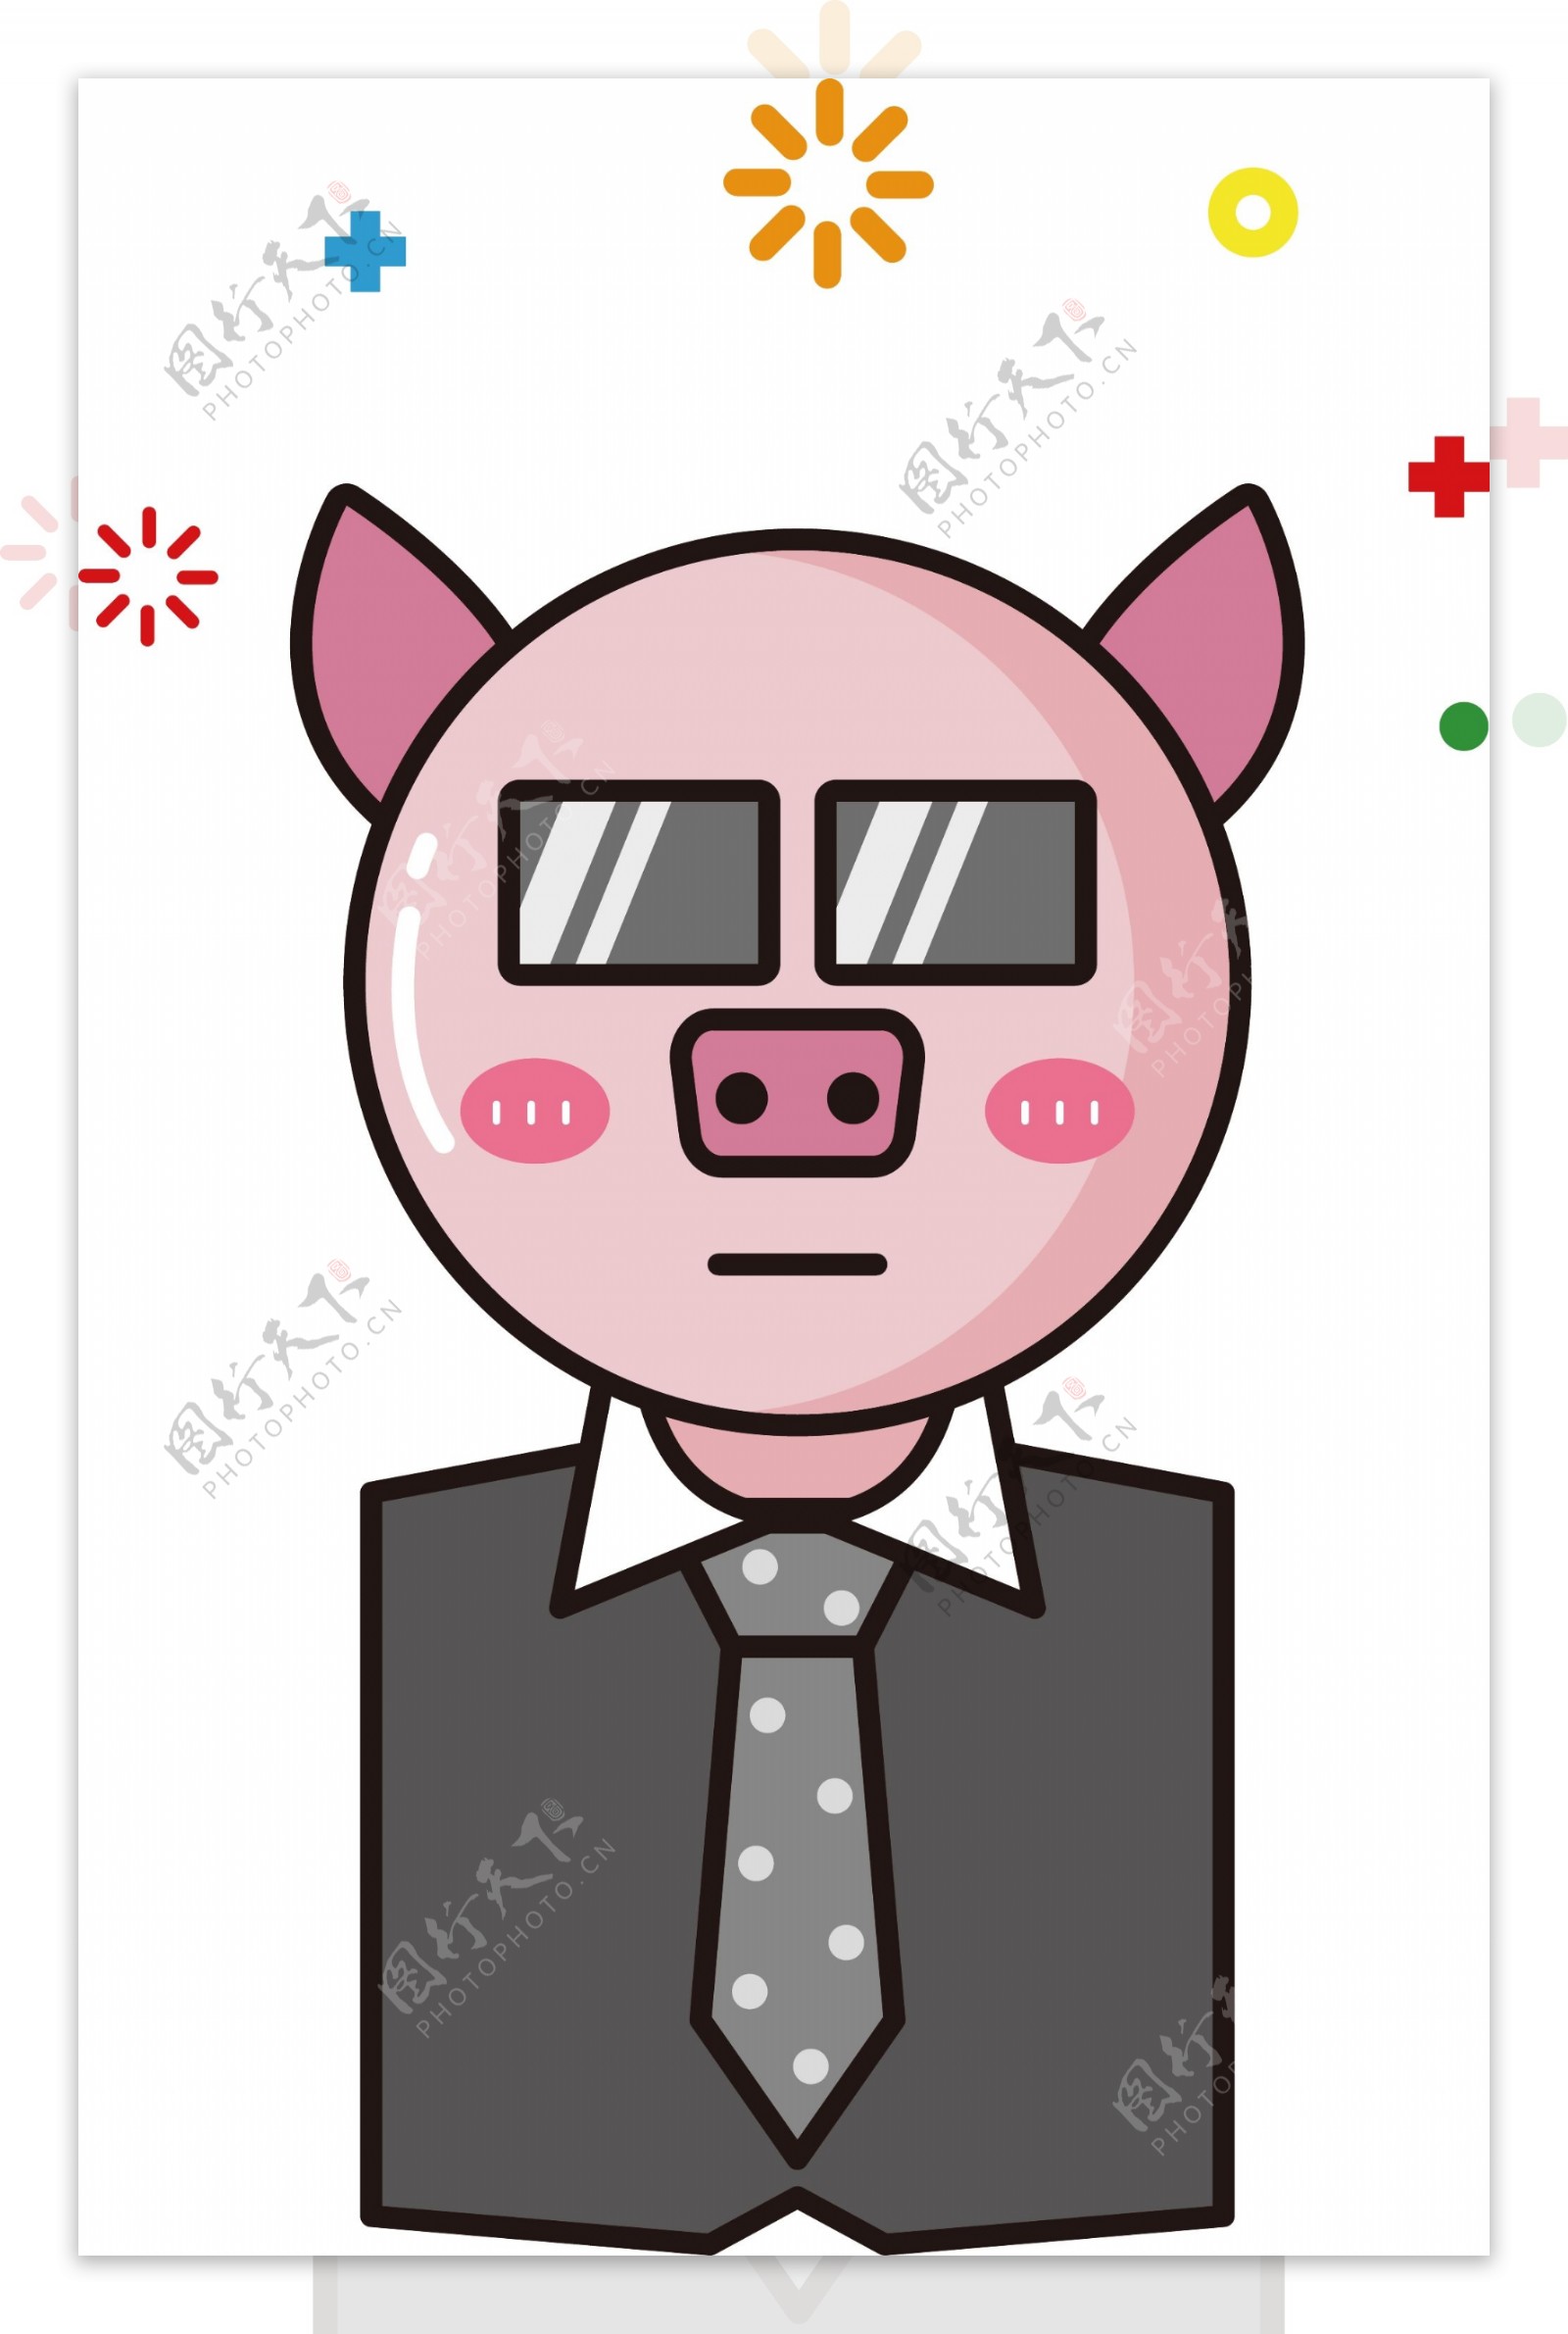 保镖猪西装卡通mbe表情包可商用元素